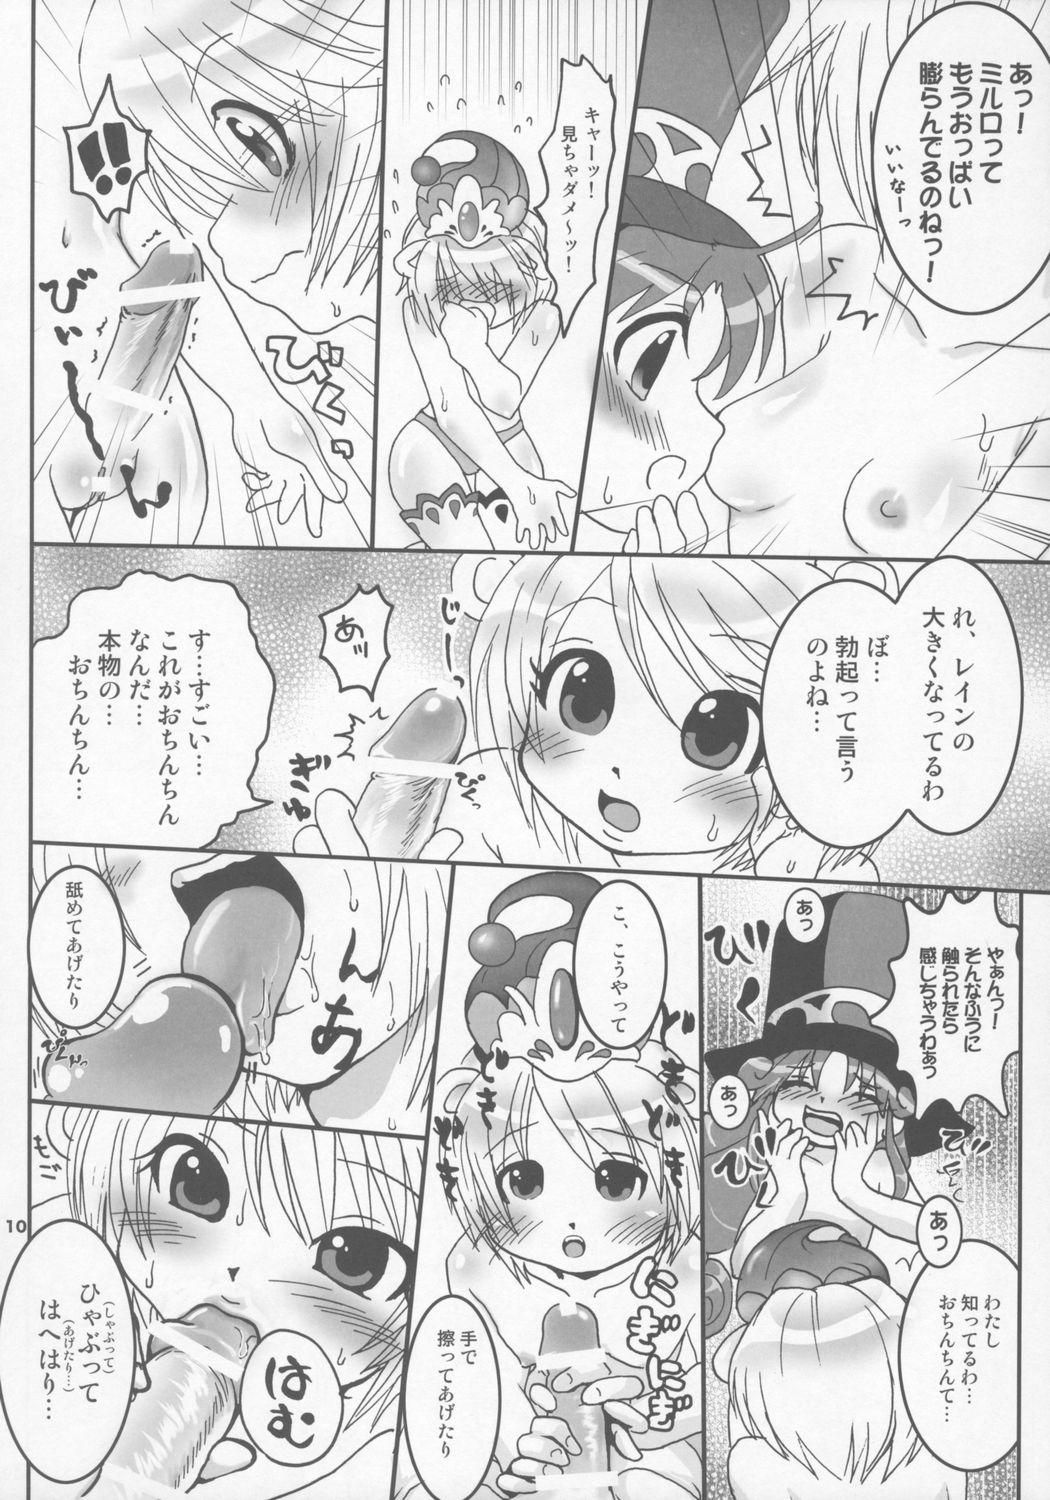 Long Tonikaku Yattemiyou! - Fushigiboshi no futagohime Leaked - Page 9